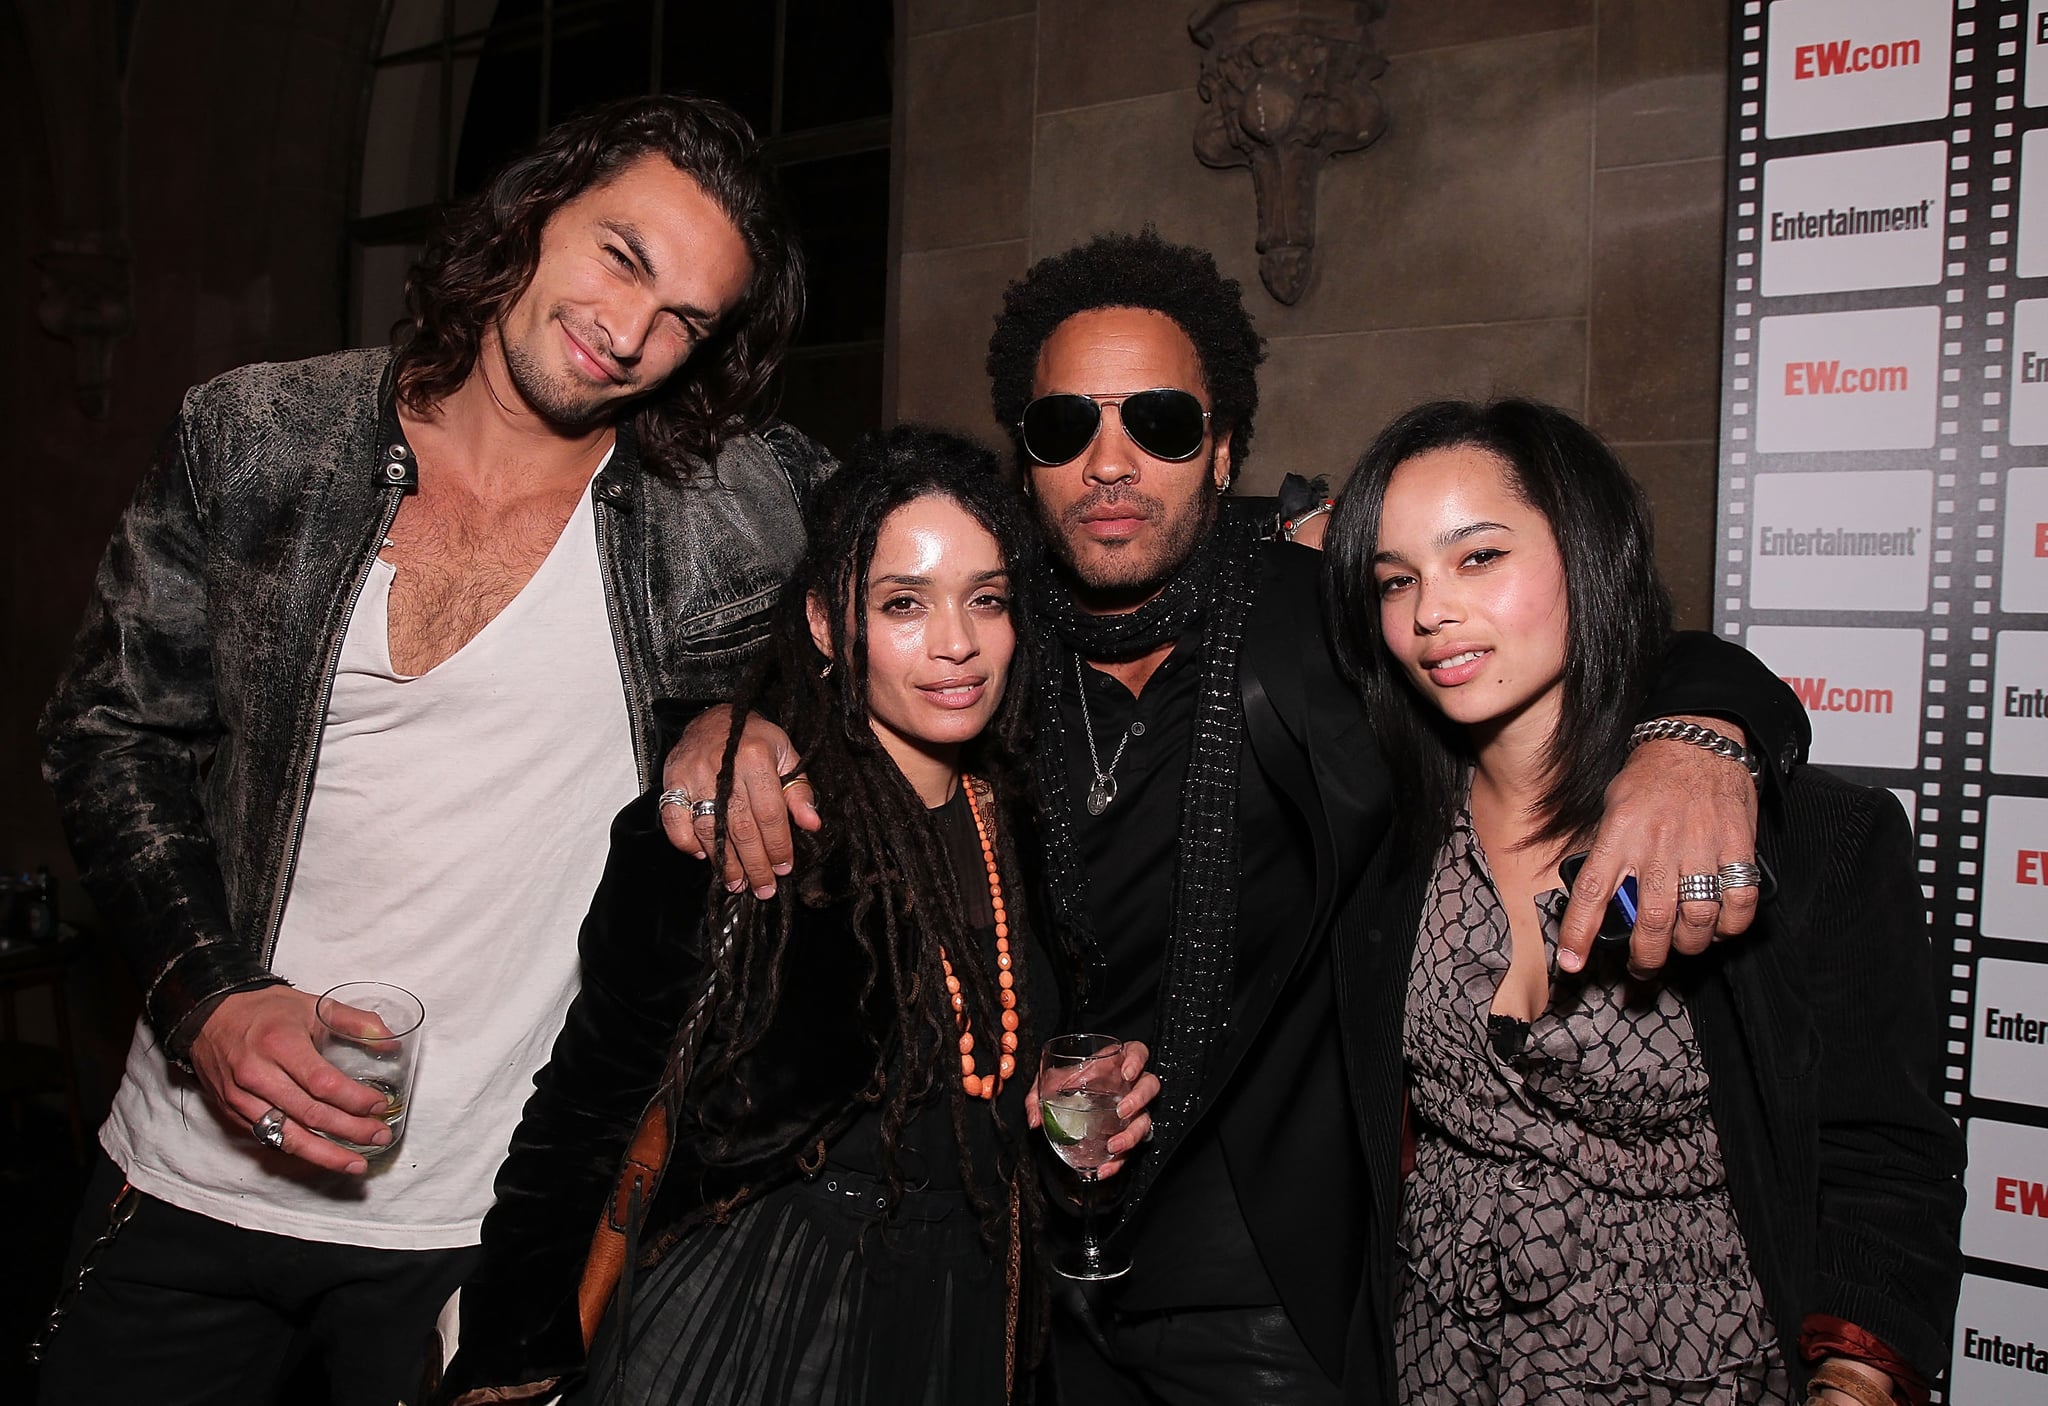 ¿Qué tal los objetivos familiares? Lenny apareció para pasar el rato con Lisa, Jason Momoa y Zoë en una fiesta previa a los Oscars en febrero de 2010.